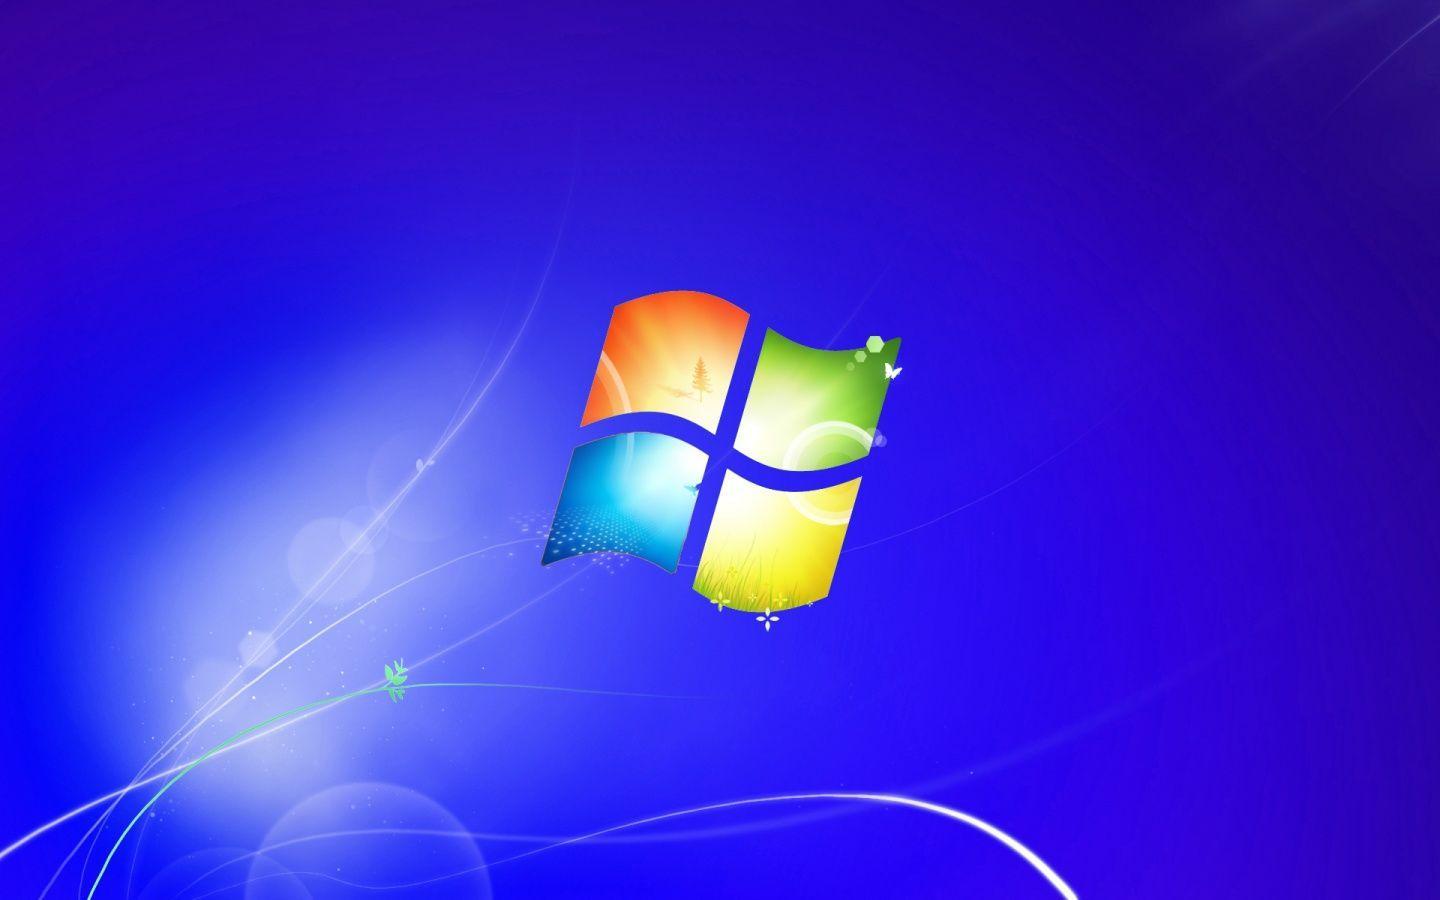 Windows 1440x900 wallpapers mang đến cho bạn một trải nghiệm tuyệt vời với những hình nền độ phân giải cao và sắc nét. Với số lượng lớn những bức hình đa dạng về chủ đề và phong cách, bạn sẽ khám phá được điều mới mẻ mỗi khi thay đổi màn hình.